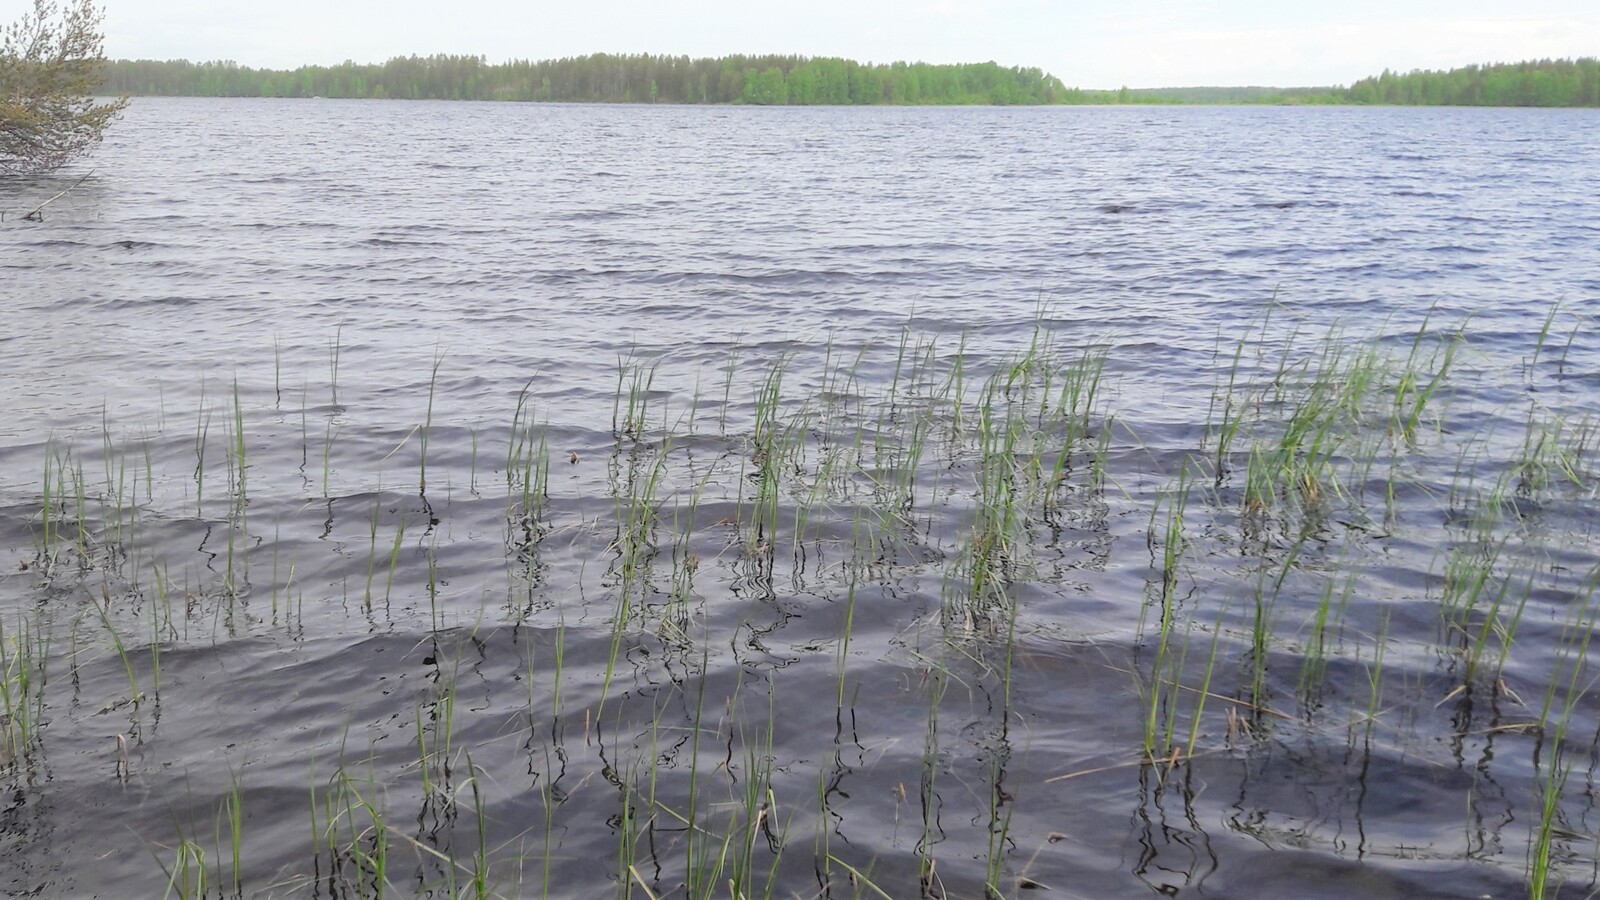 Kesäisessä järvimaisemassa rantavedessä kasvaa vesikasveja. Vesi laineilee hieman.